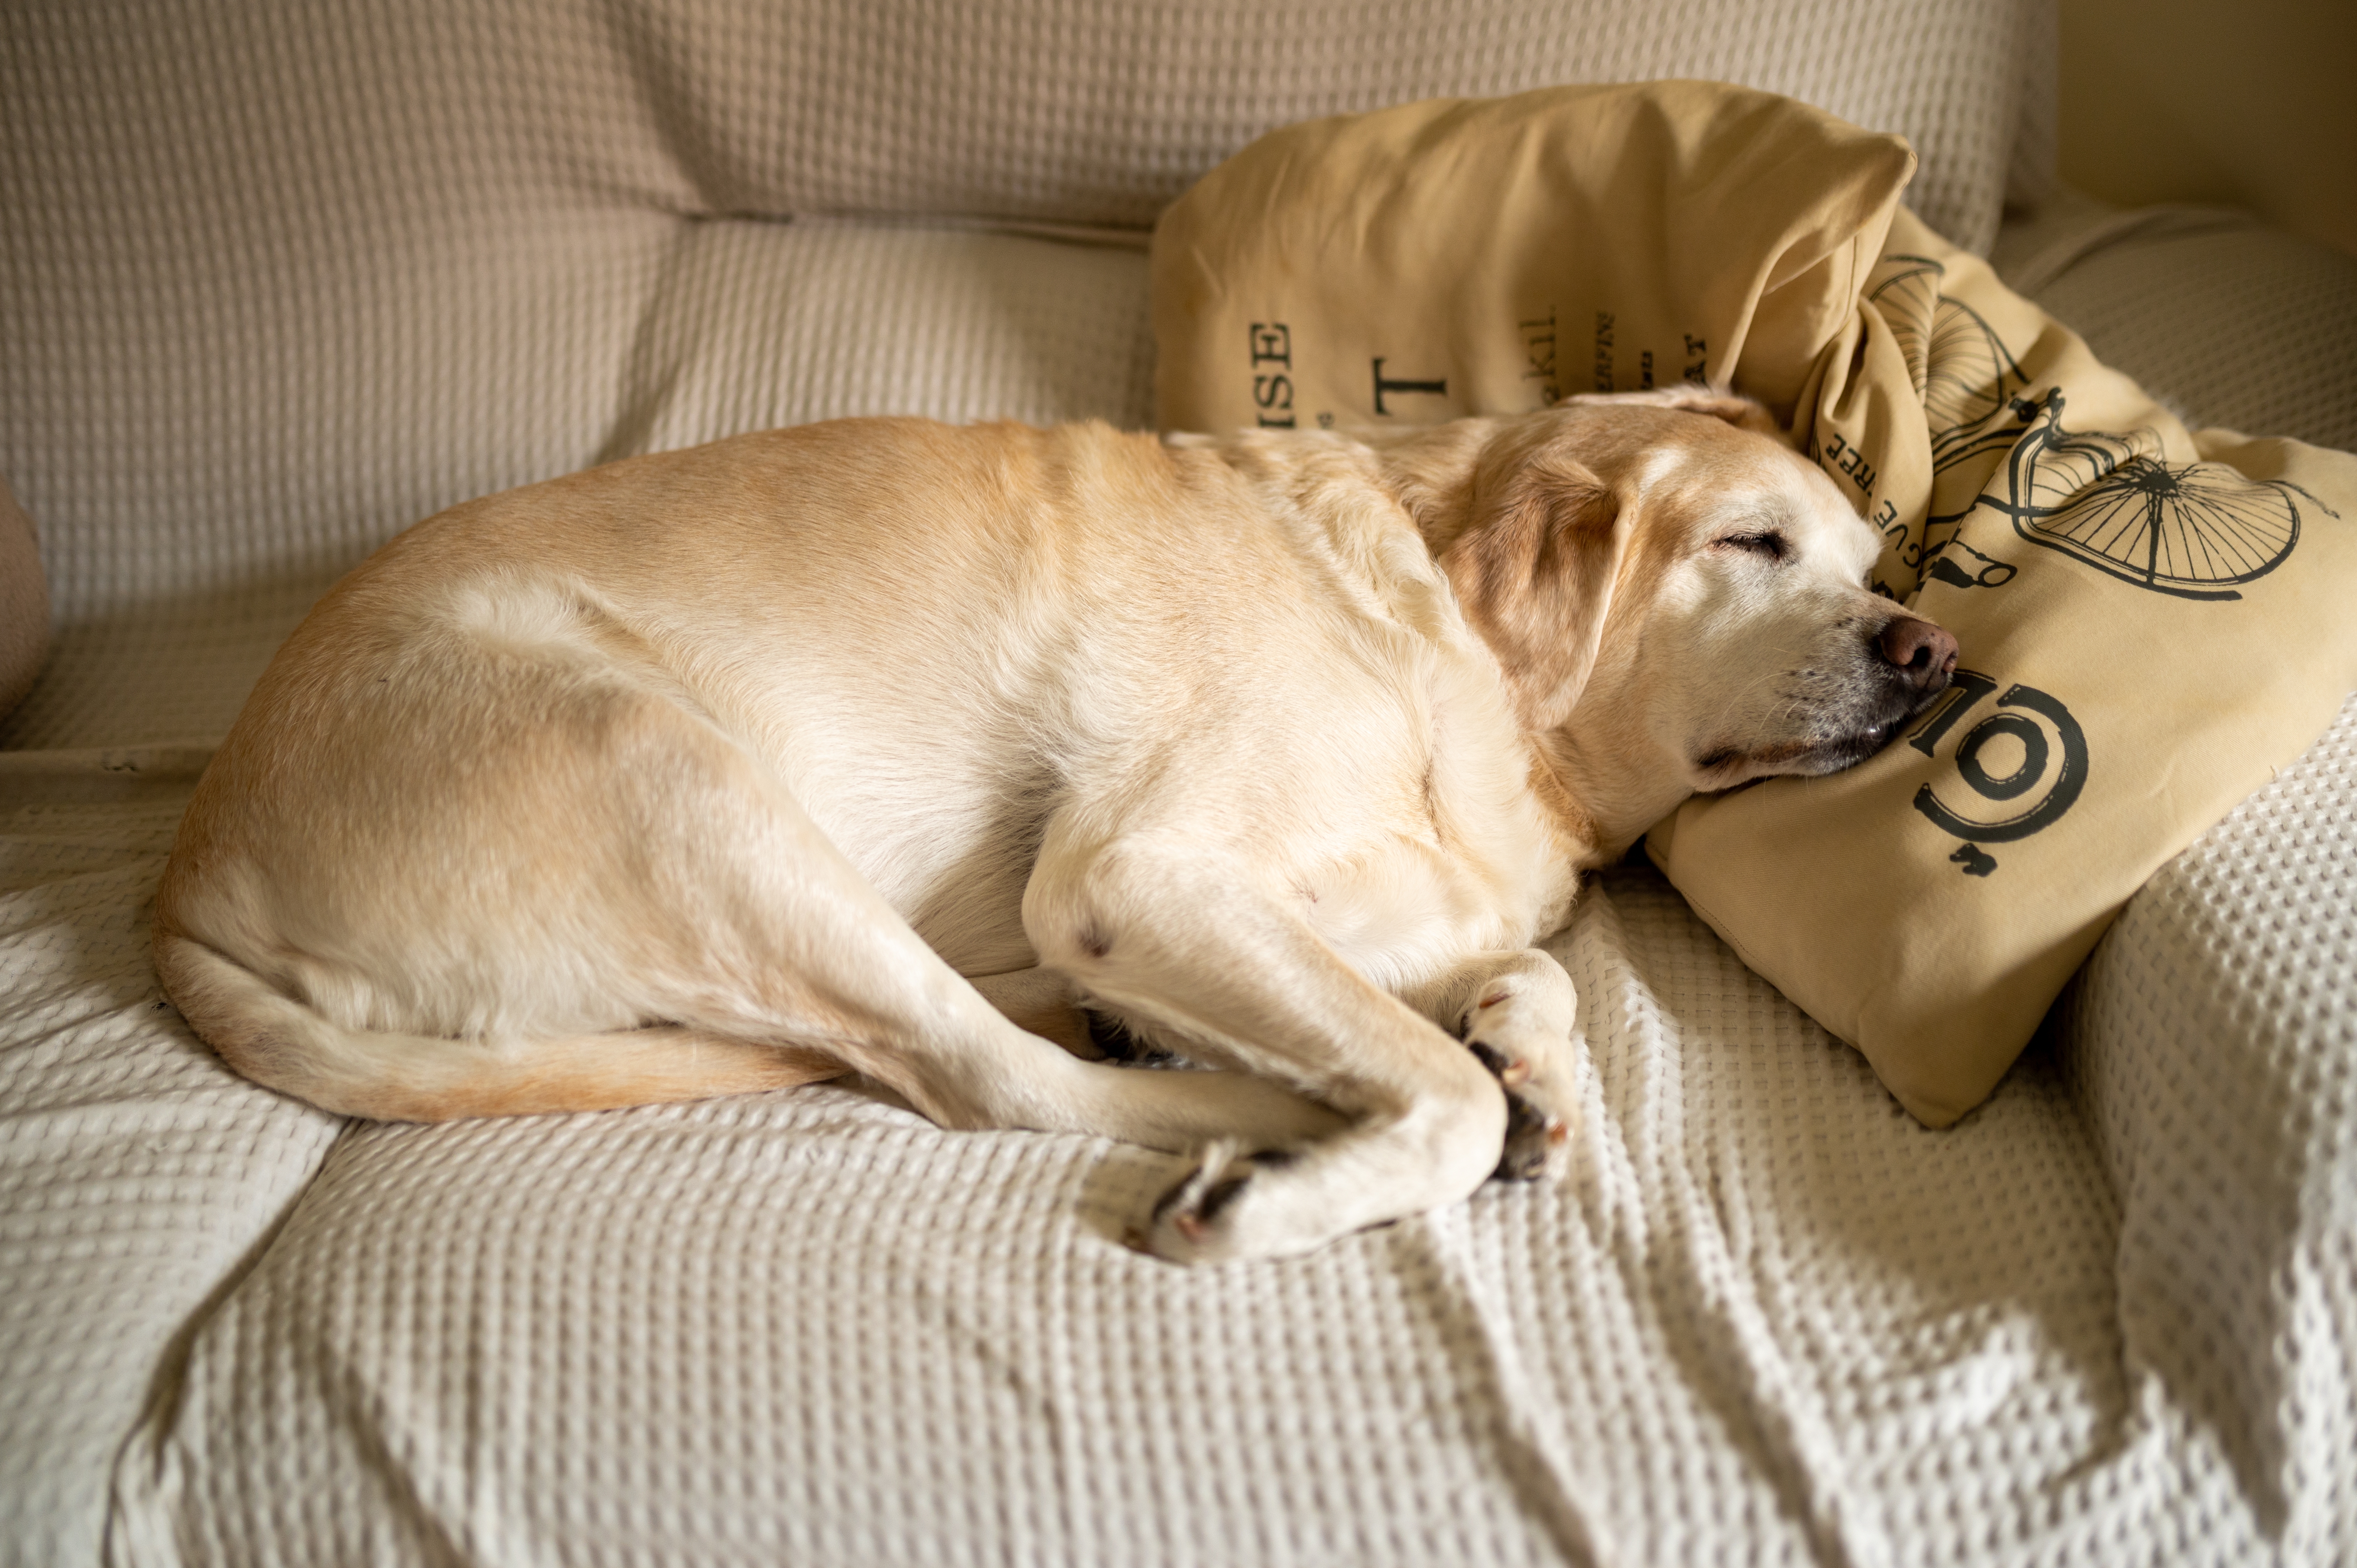 Imagem de um cachorro branco com tons de amarelo claro deitado sobre um sofá, com a cabeça apoiada em duas almofadas e uma manta branca estendida sobre o sofá.